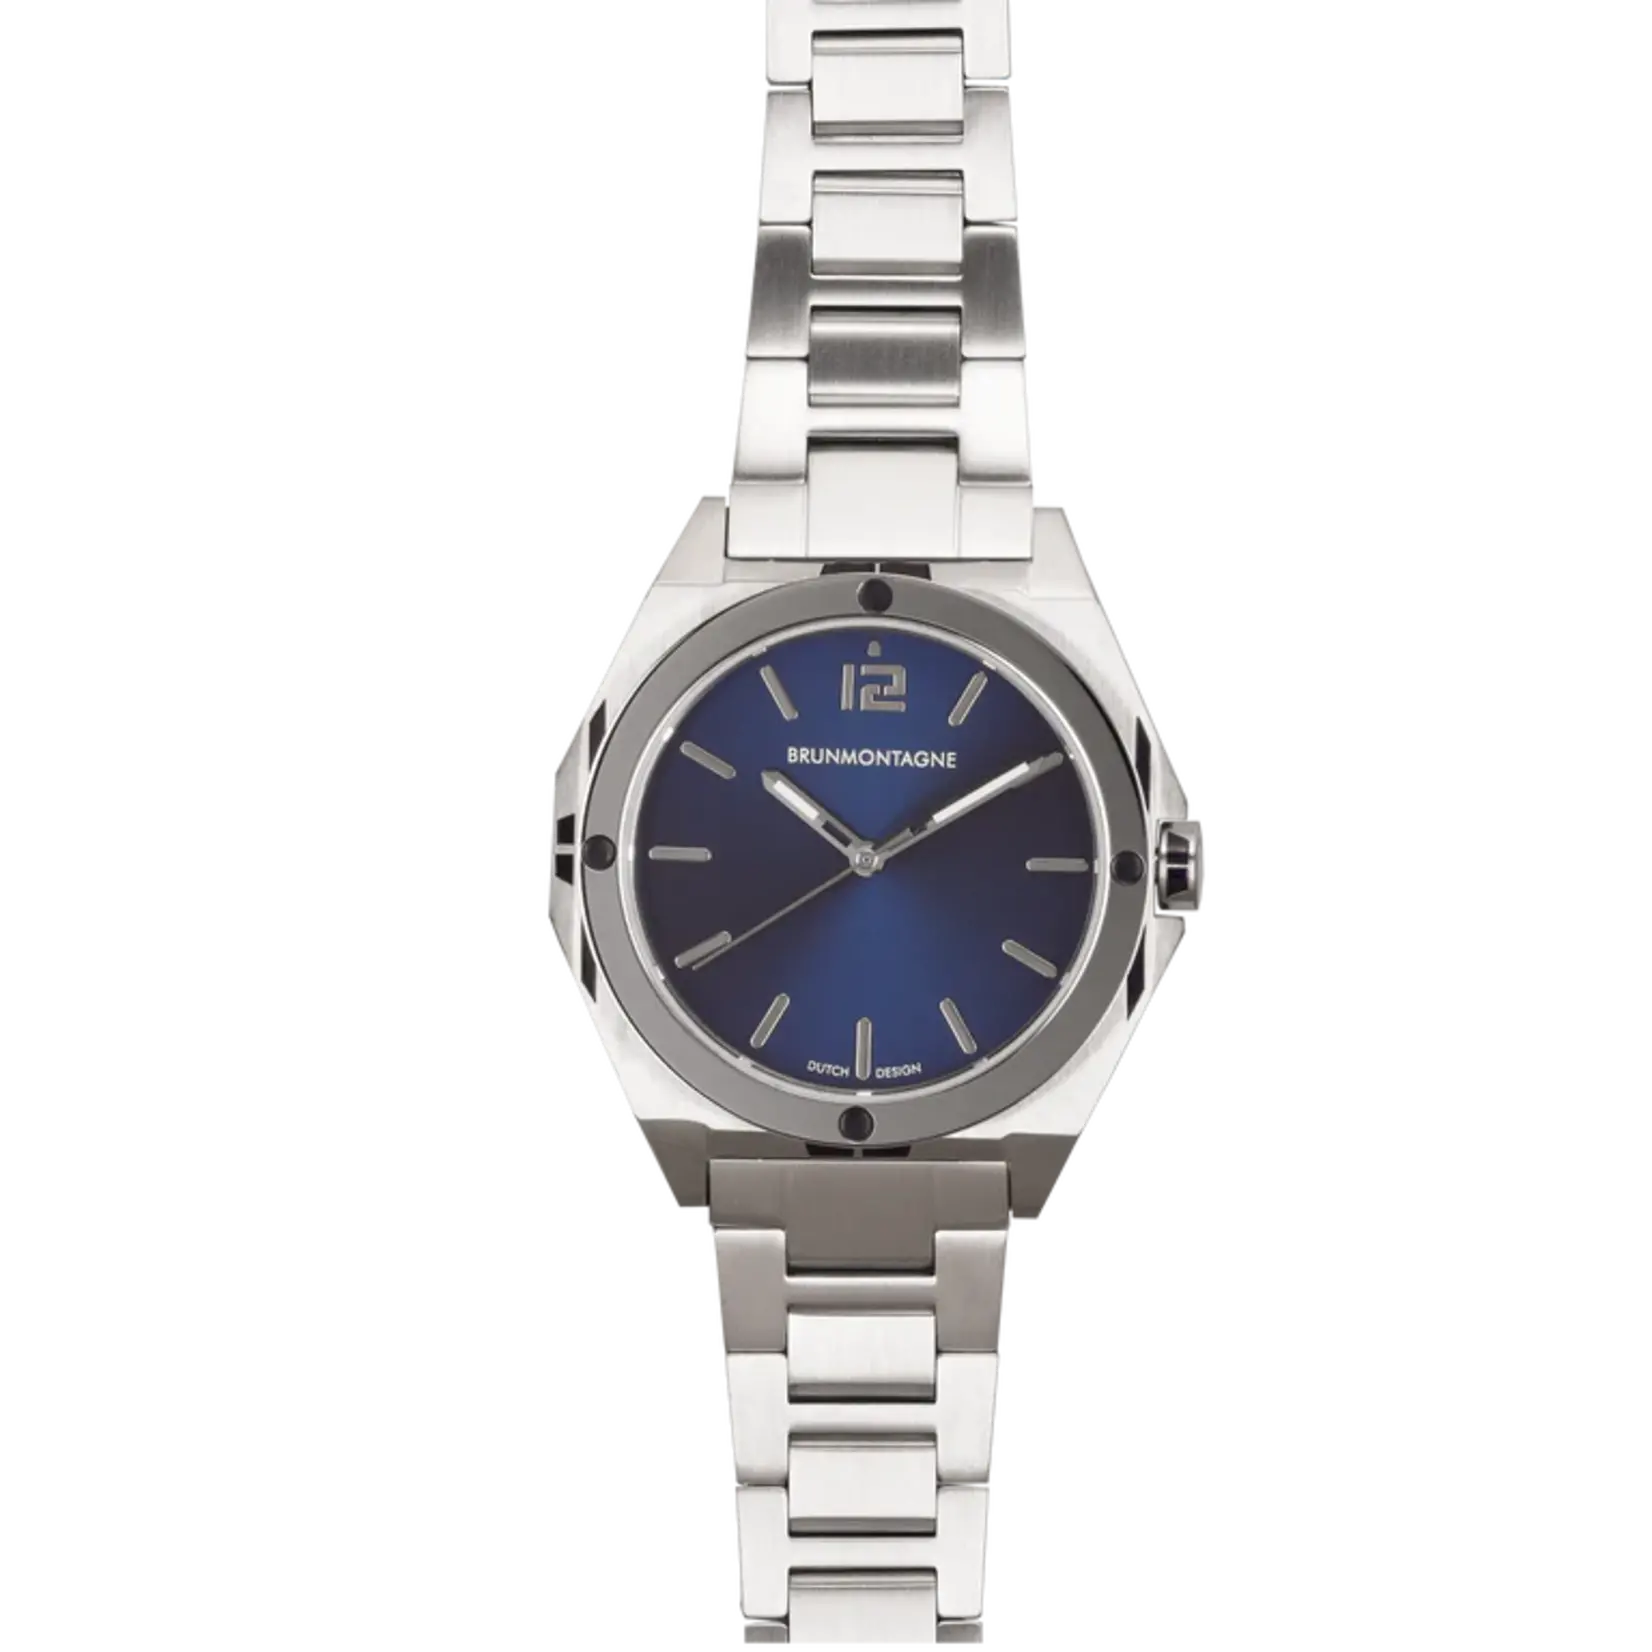 Brunmontagne Brunmontagne horloge Representor Blauw 42mm automaat